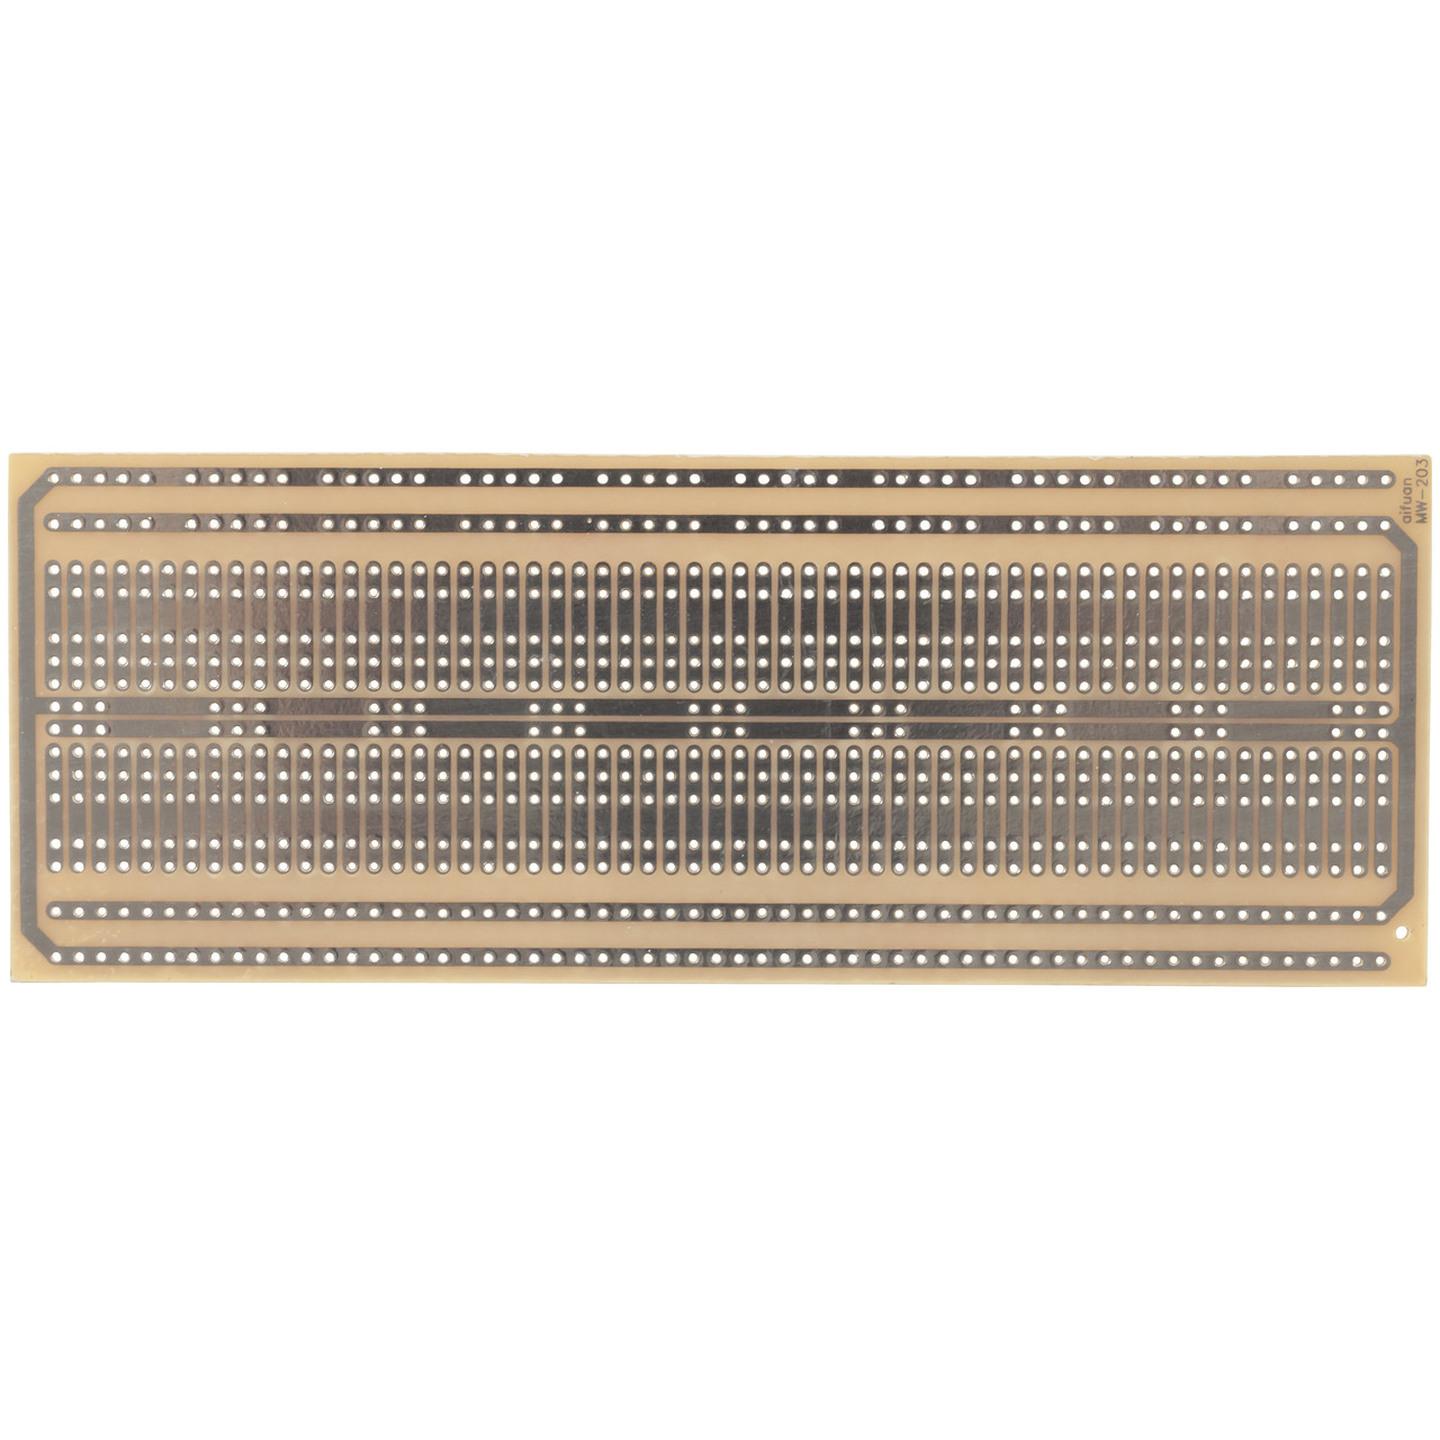 Large Breadboard Layout Prototyping Board